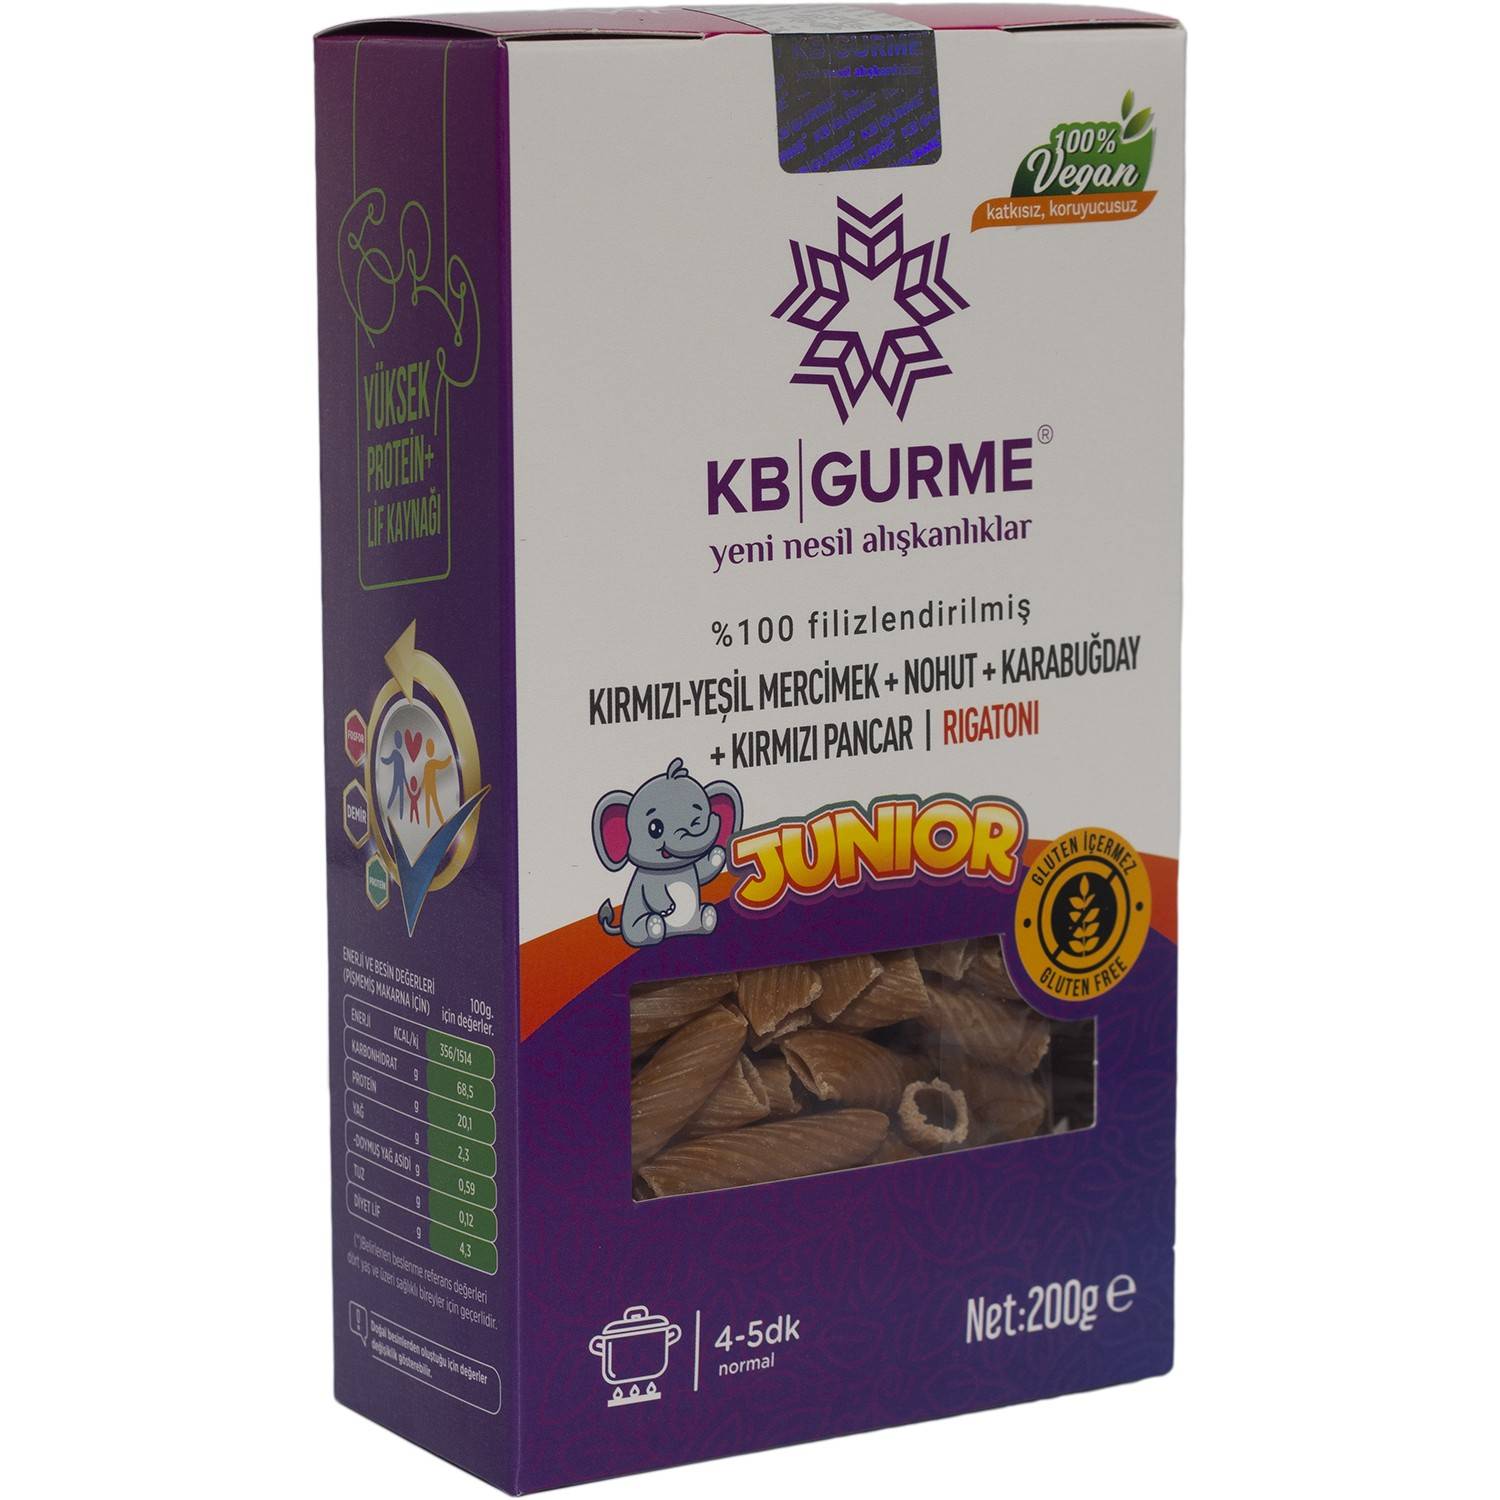 KB Gurme Glutensiz & Vegan Filizlendirilmiş Bakliyat Unlarından Junior  Rigatoni 200 Gr